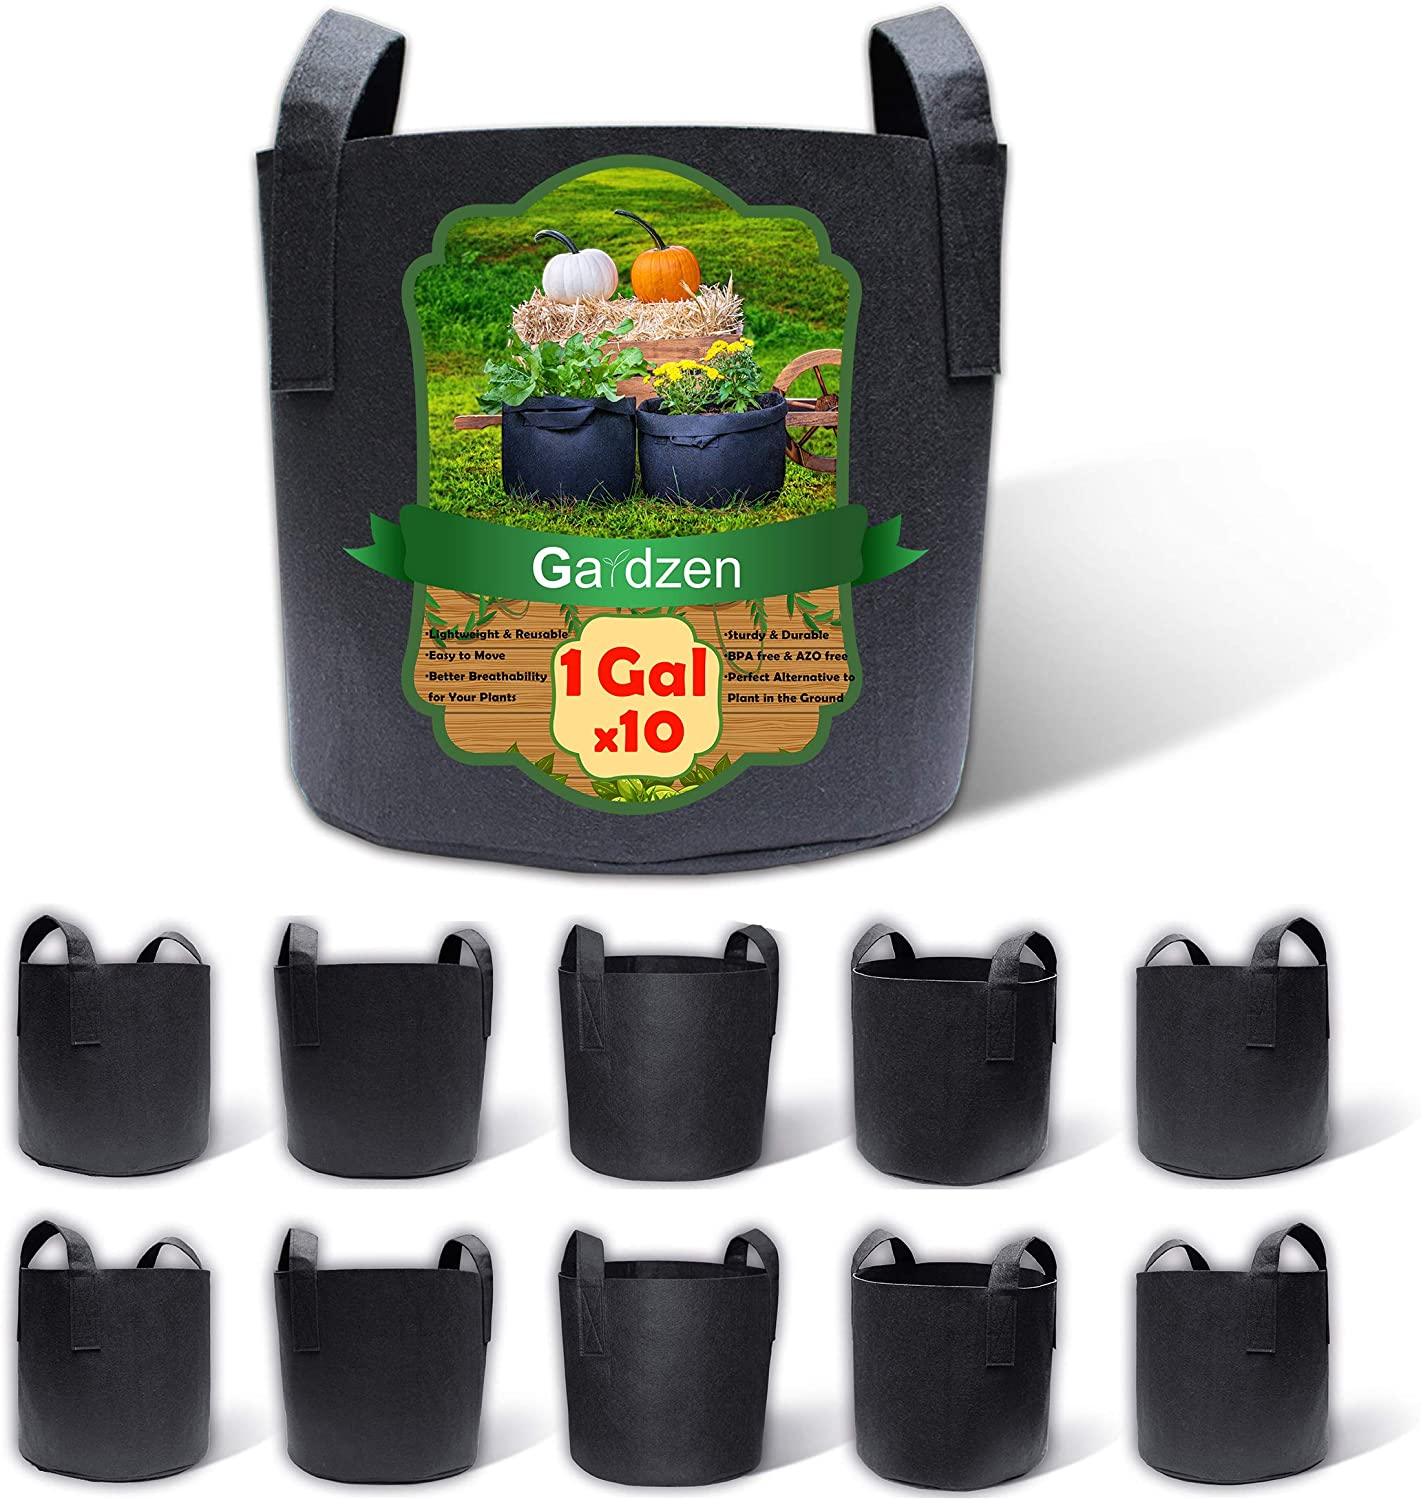 Gardzen 10&20 Packs Garden Pots, Fabric Plastic Plant Pots